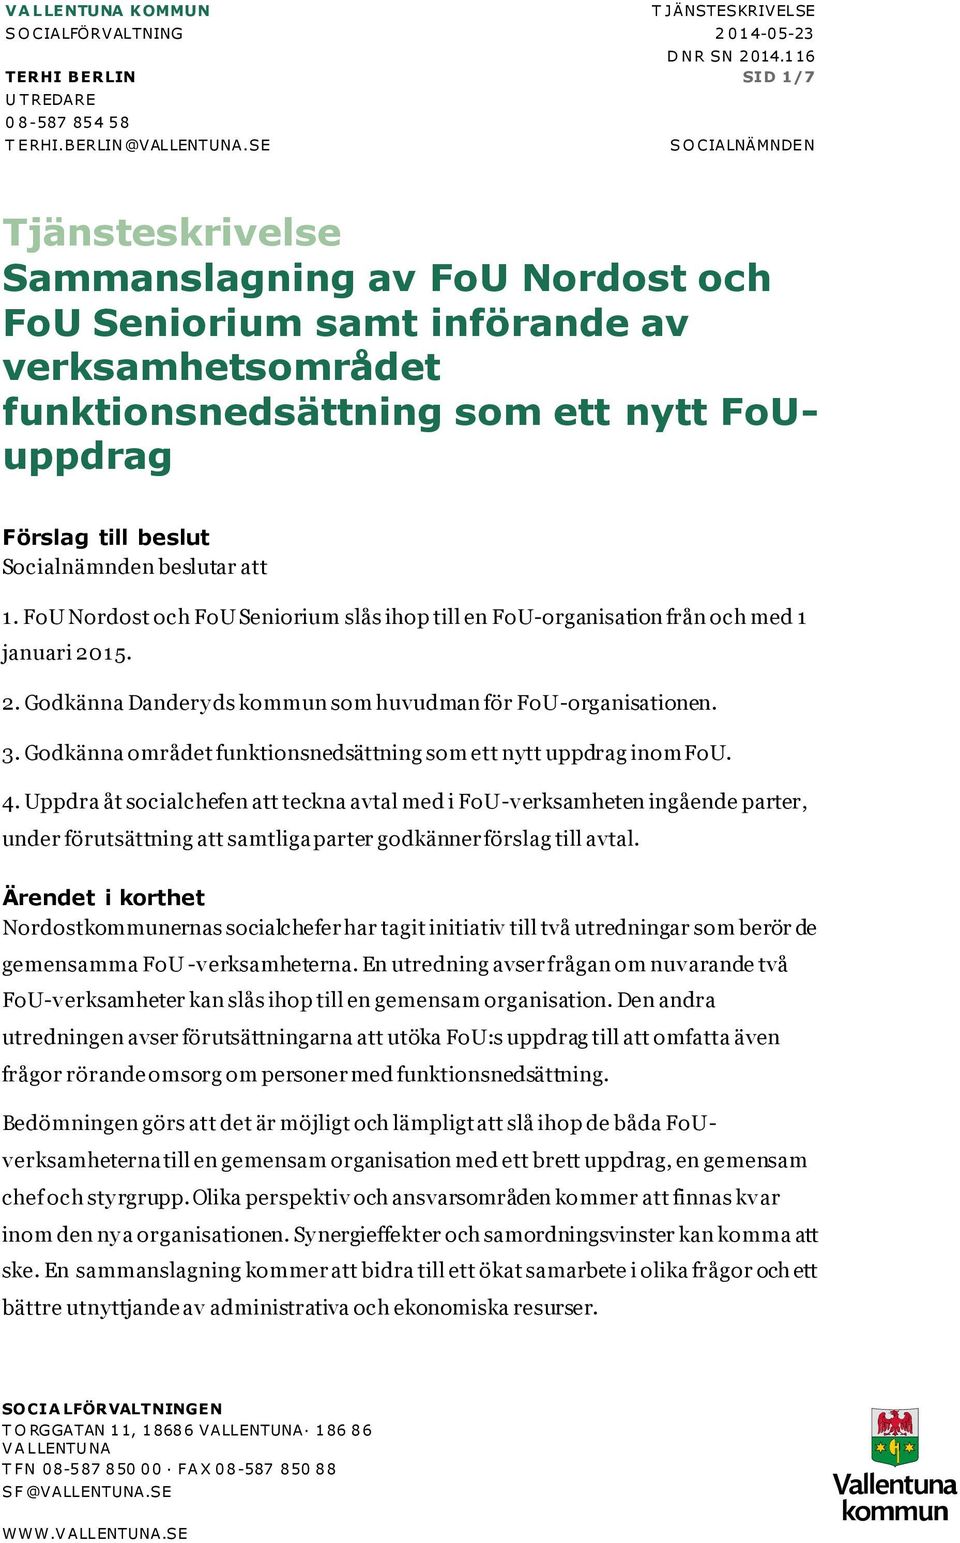 Socialnämnden beslutar att 1. FoU Nordost och FoU Seniorium slås ihop till en FoU-organisation från och med 1 januari 2015. 2. Godkänna Dandery ds kommun som huvudman för FoU-organisationen. 3.